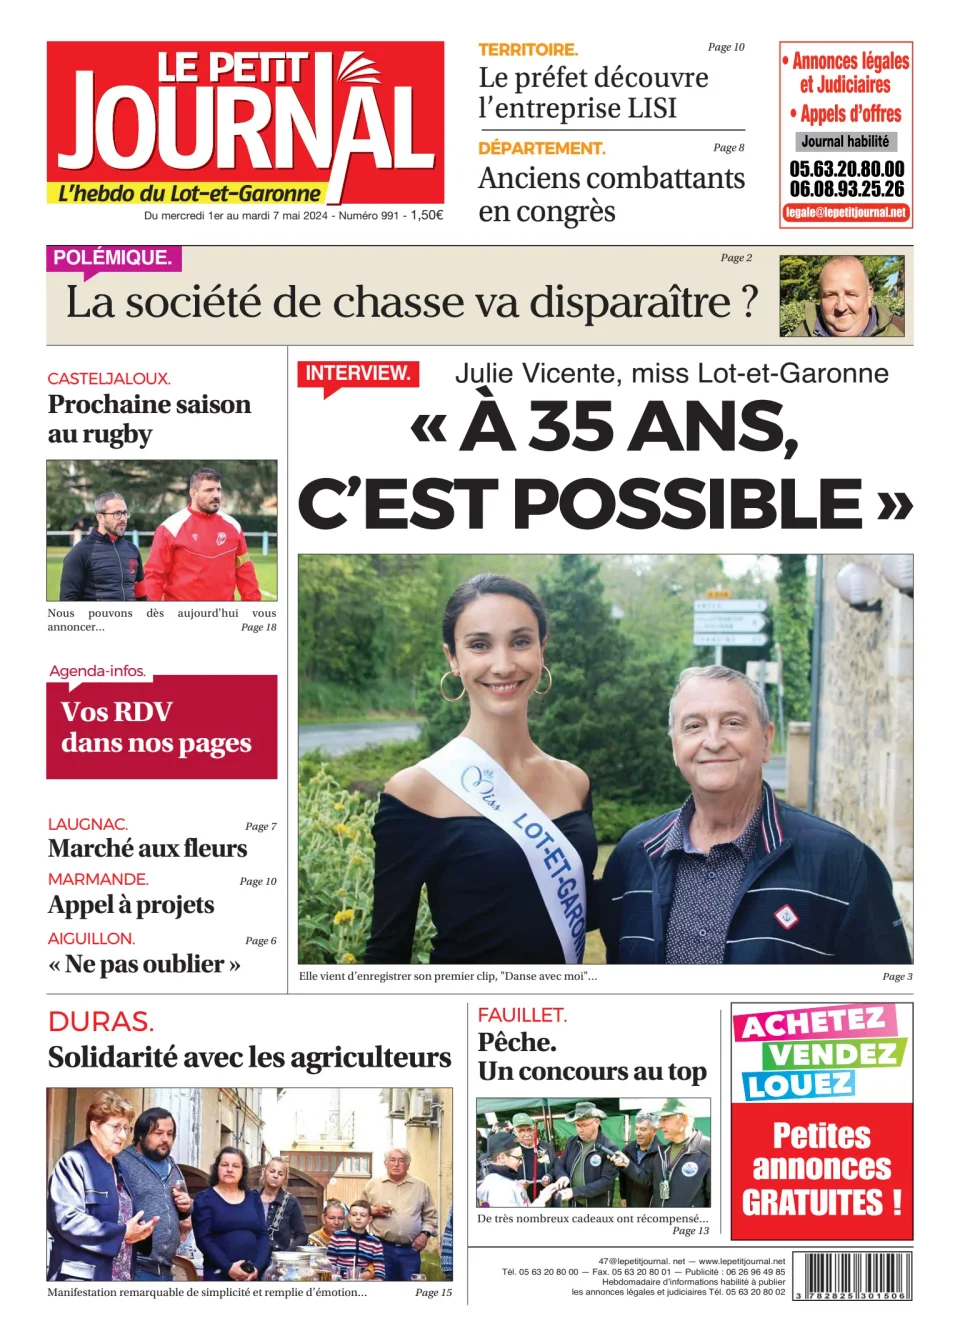 Le Petit Journal - L'hebdo du Lot-et-Garonne